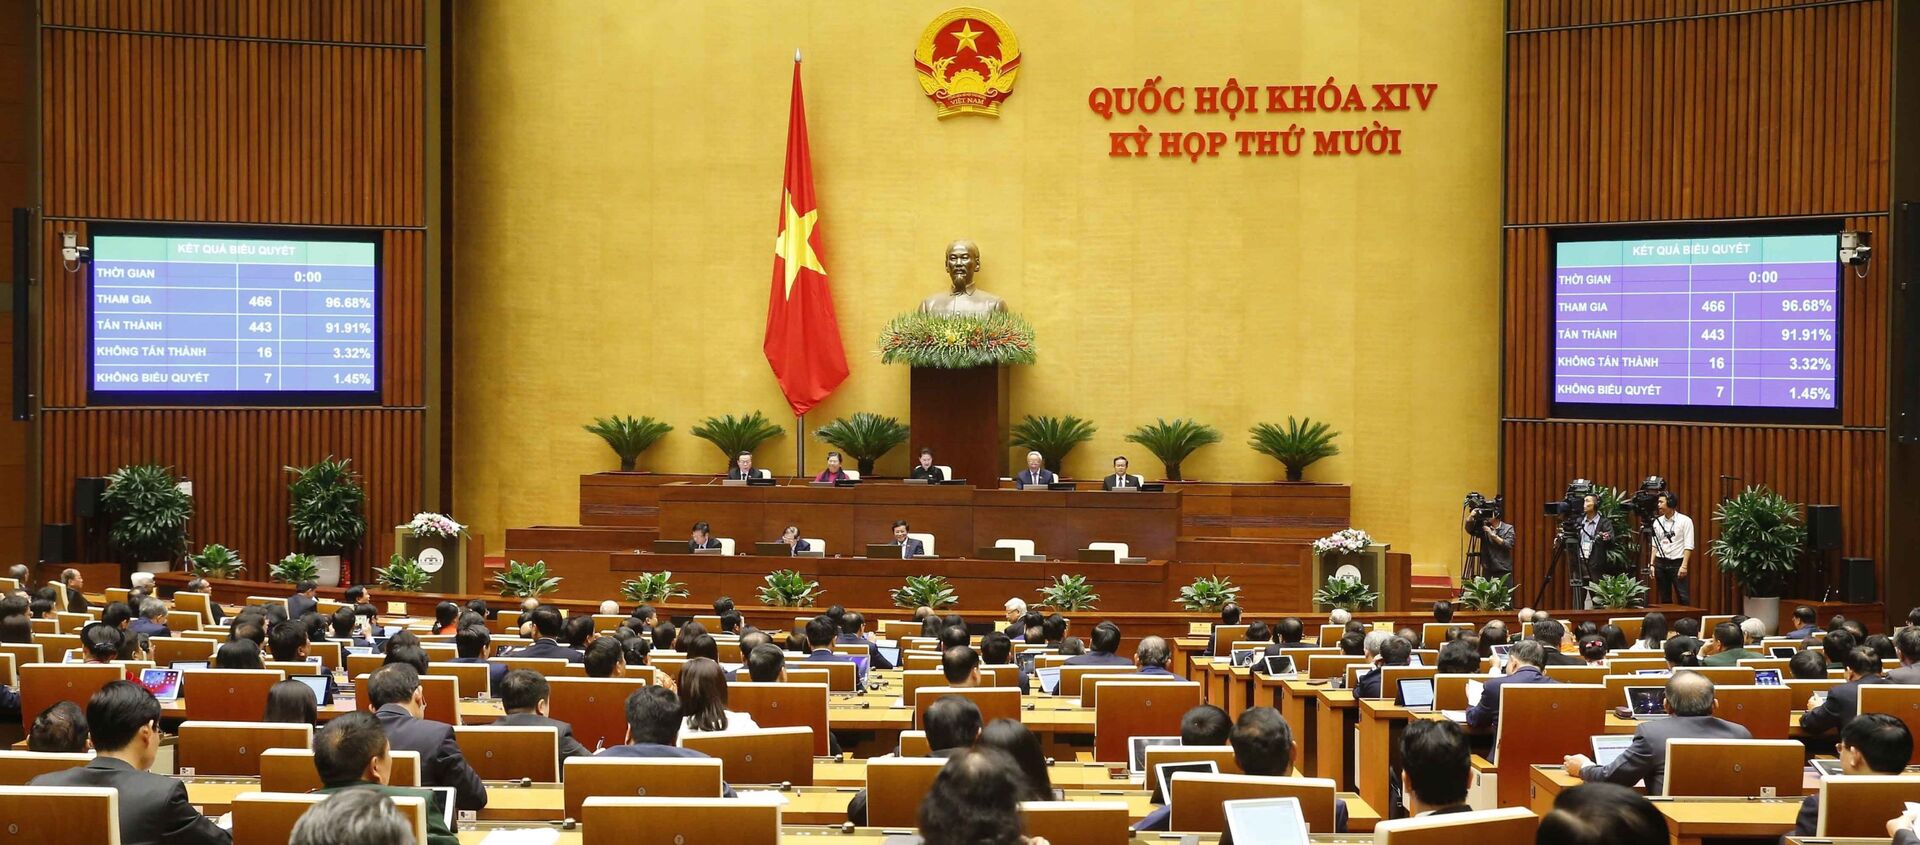 Quốc hội biểu quyết thông qua Luật Bảo vệ môi trường (sửa đổi). - Sputnik Việt Nam, 1920, 17.11.2020